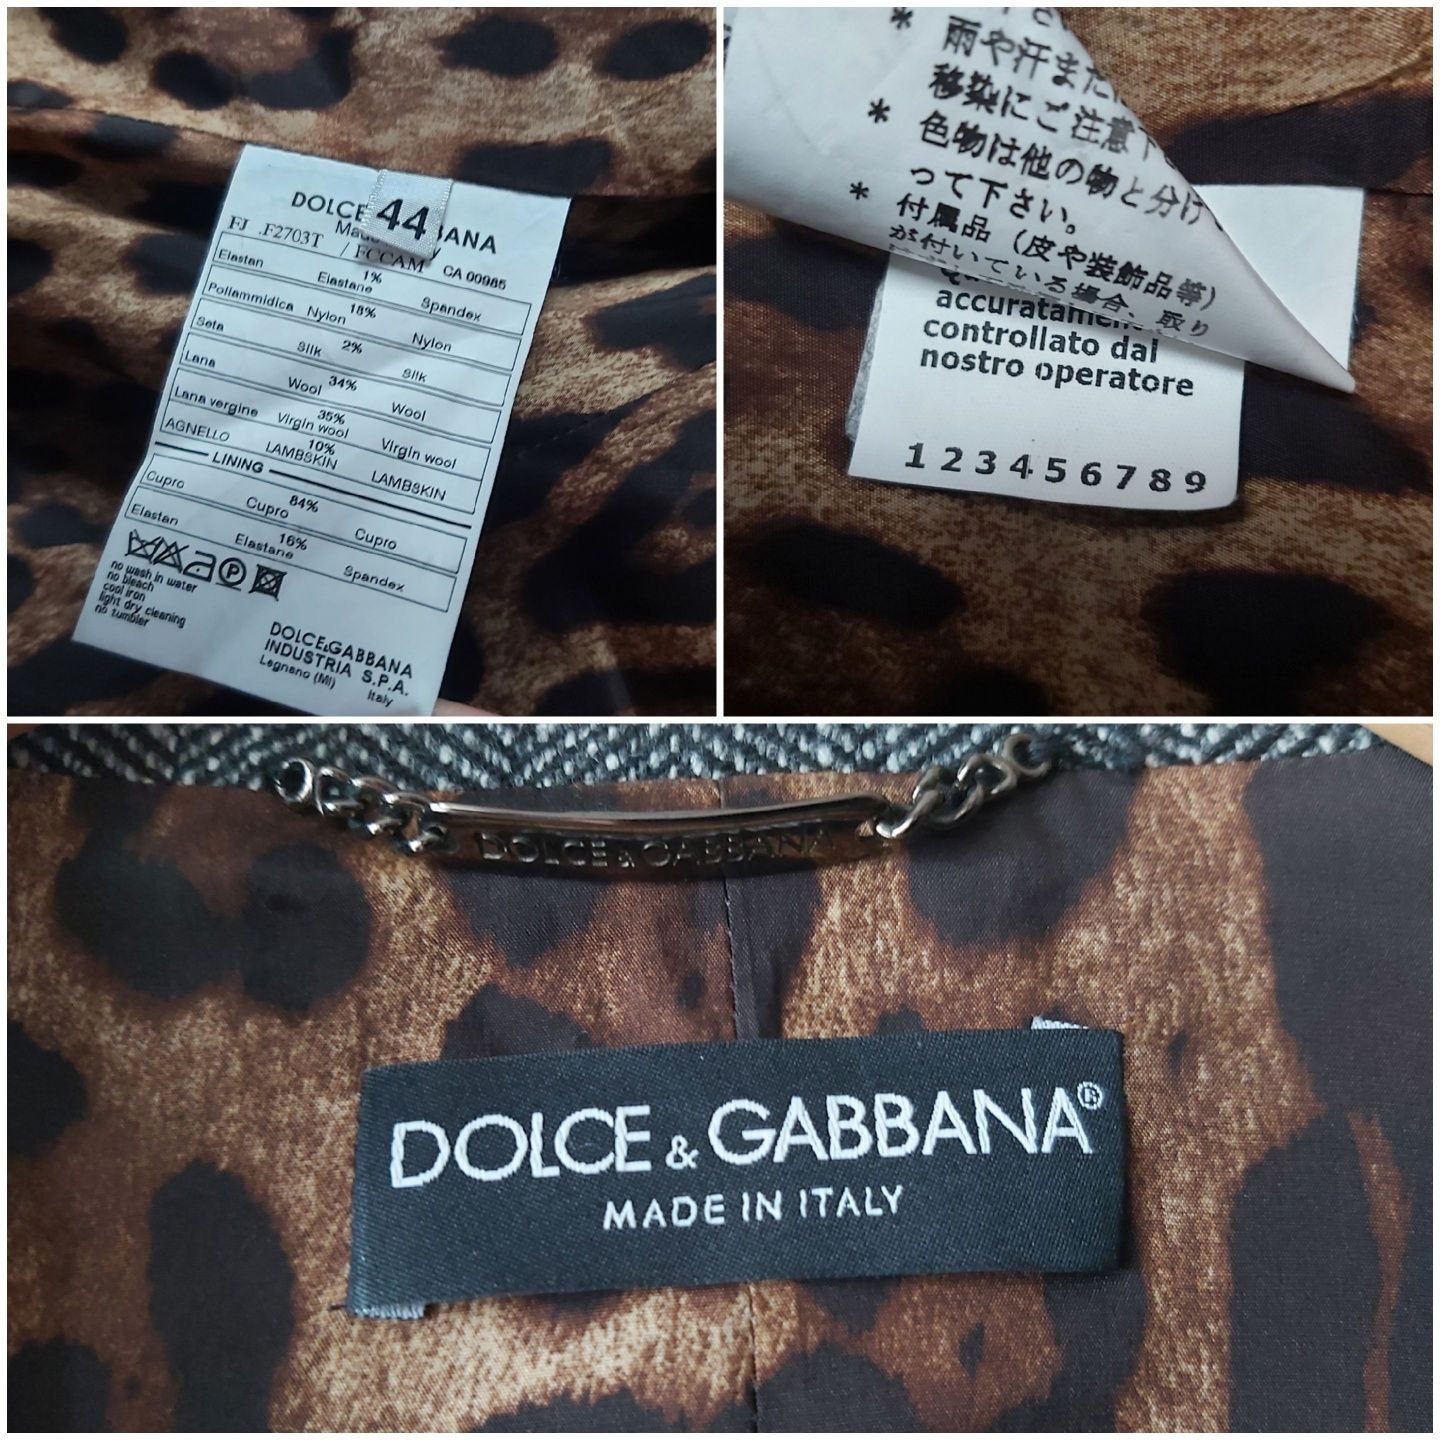 Dolce & Gabbana żakiet damski rozmiar L  made in Italy (44)